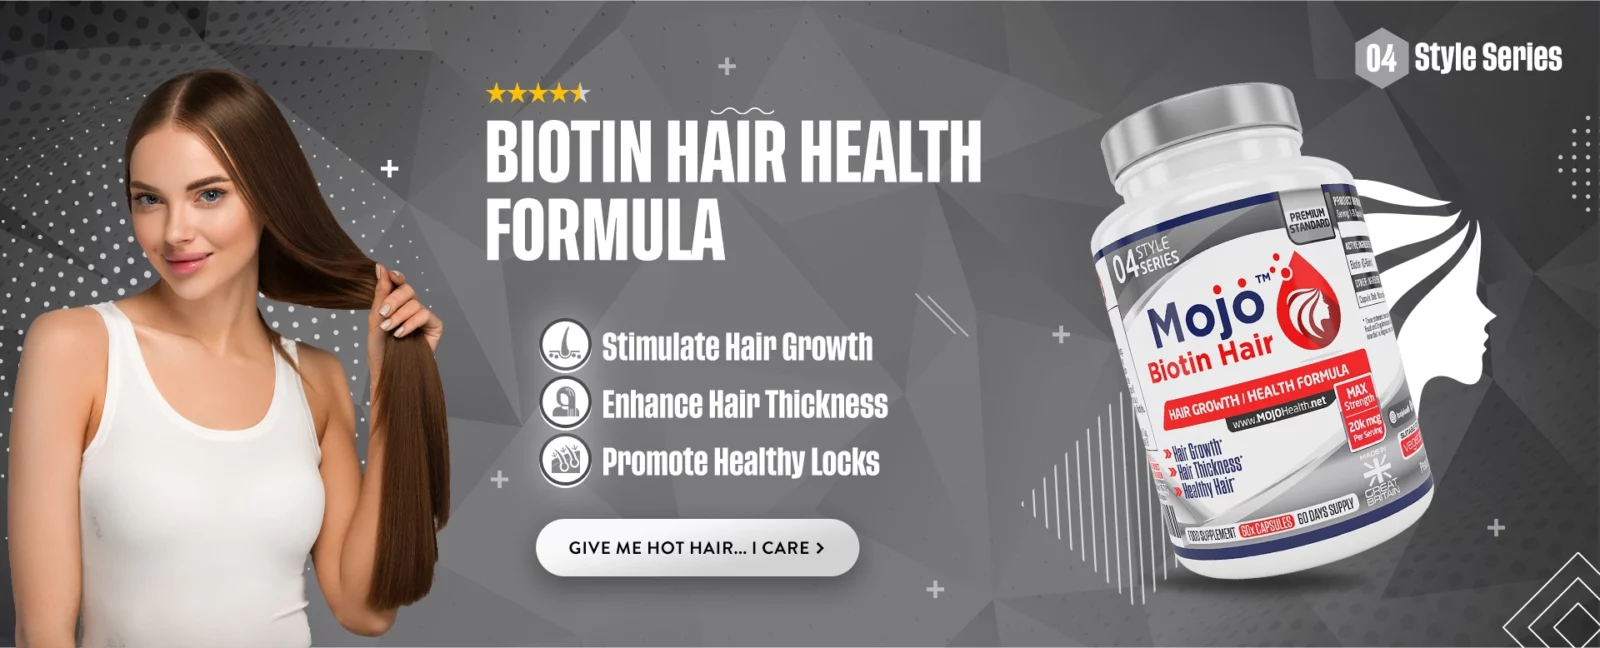 MOJO Biotin Hair Growth Hair Loss B7 Men Womens Beauty Skin Nails Supplements